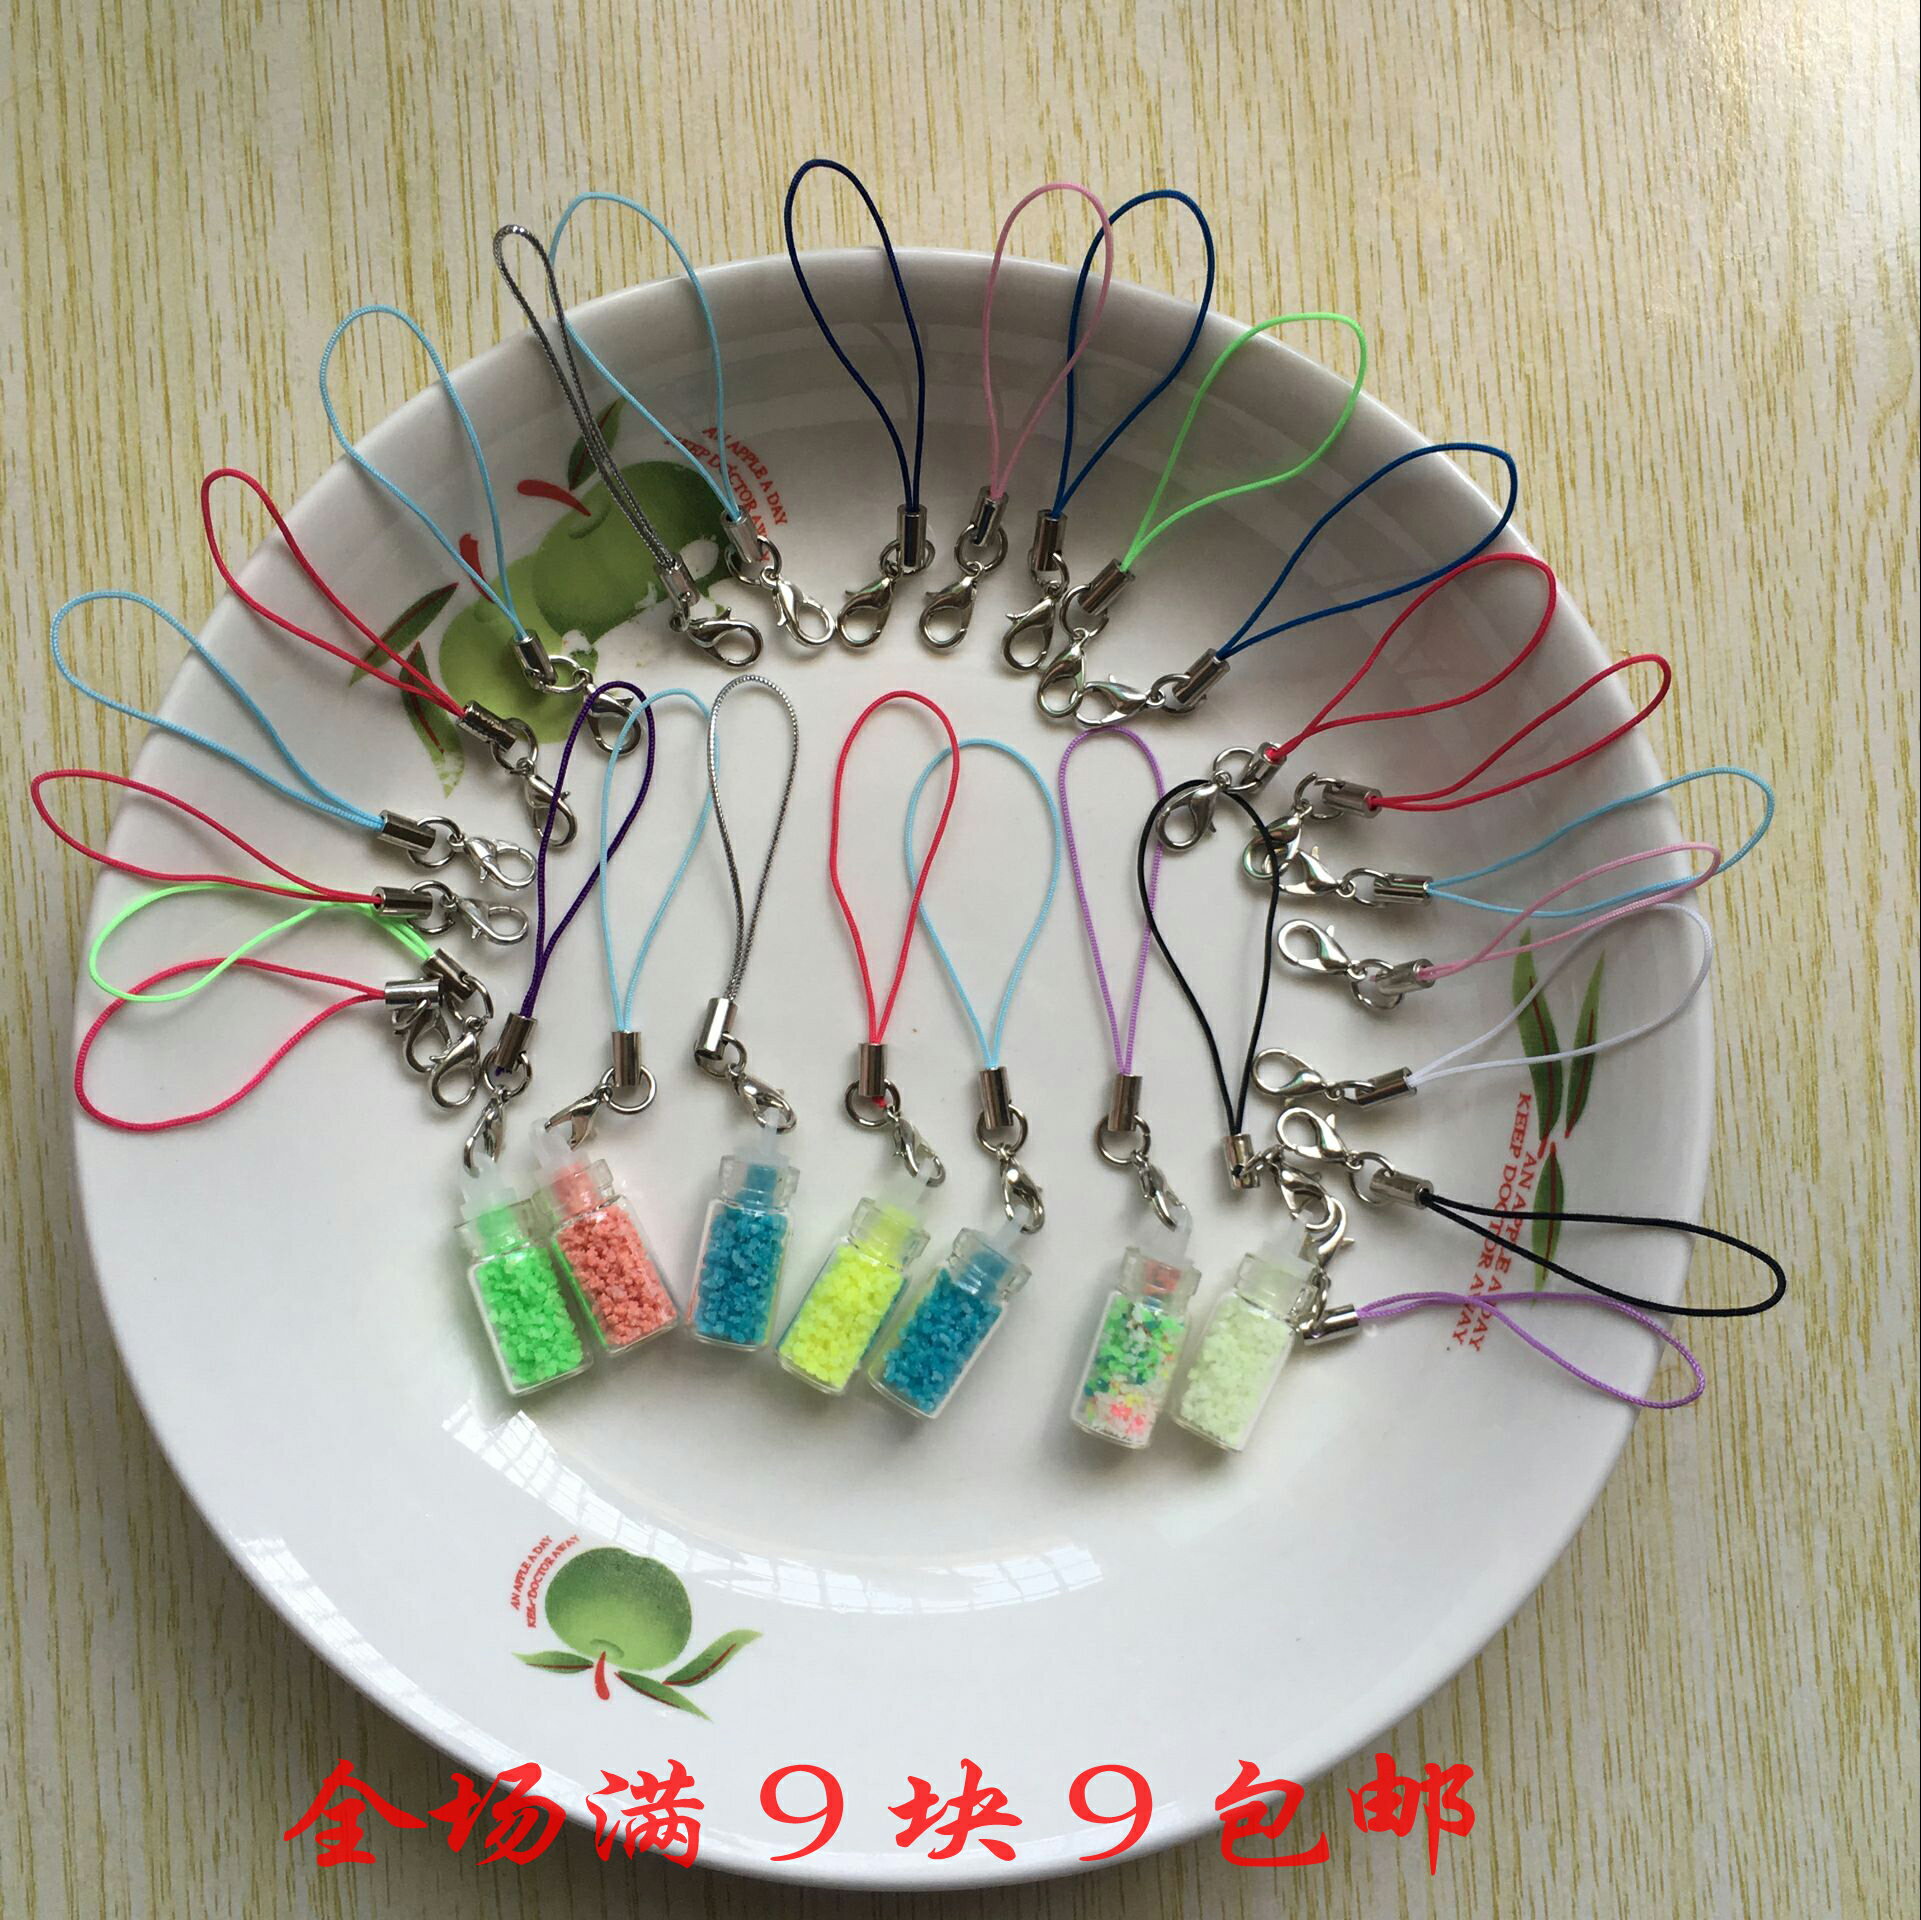 龍蝦扣手機繩 DIY配件彩色掛件繩手工材料加圈帶溝迷你小掛繩包郵